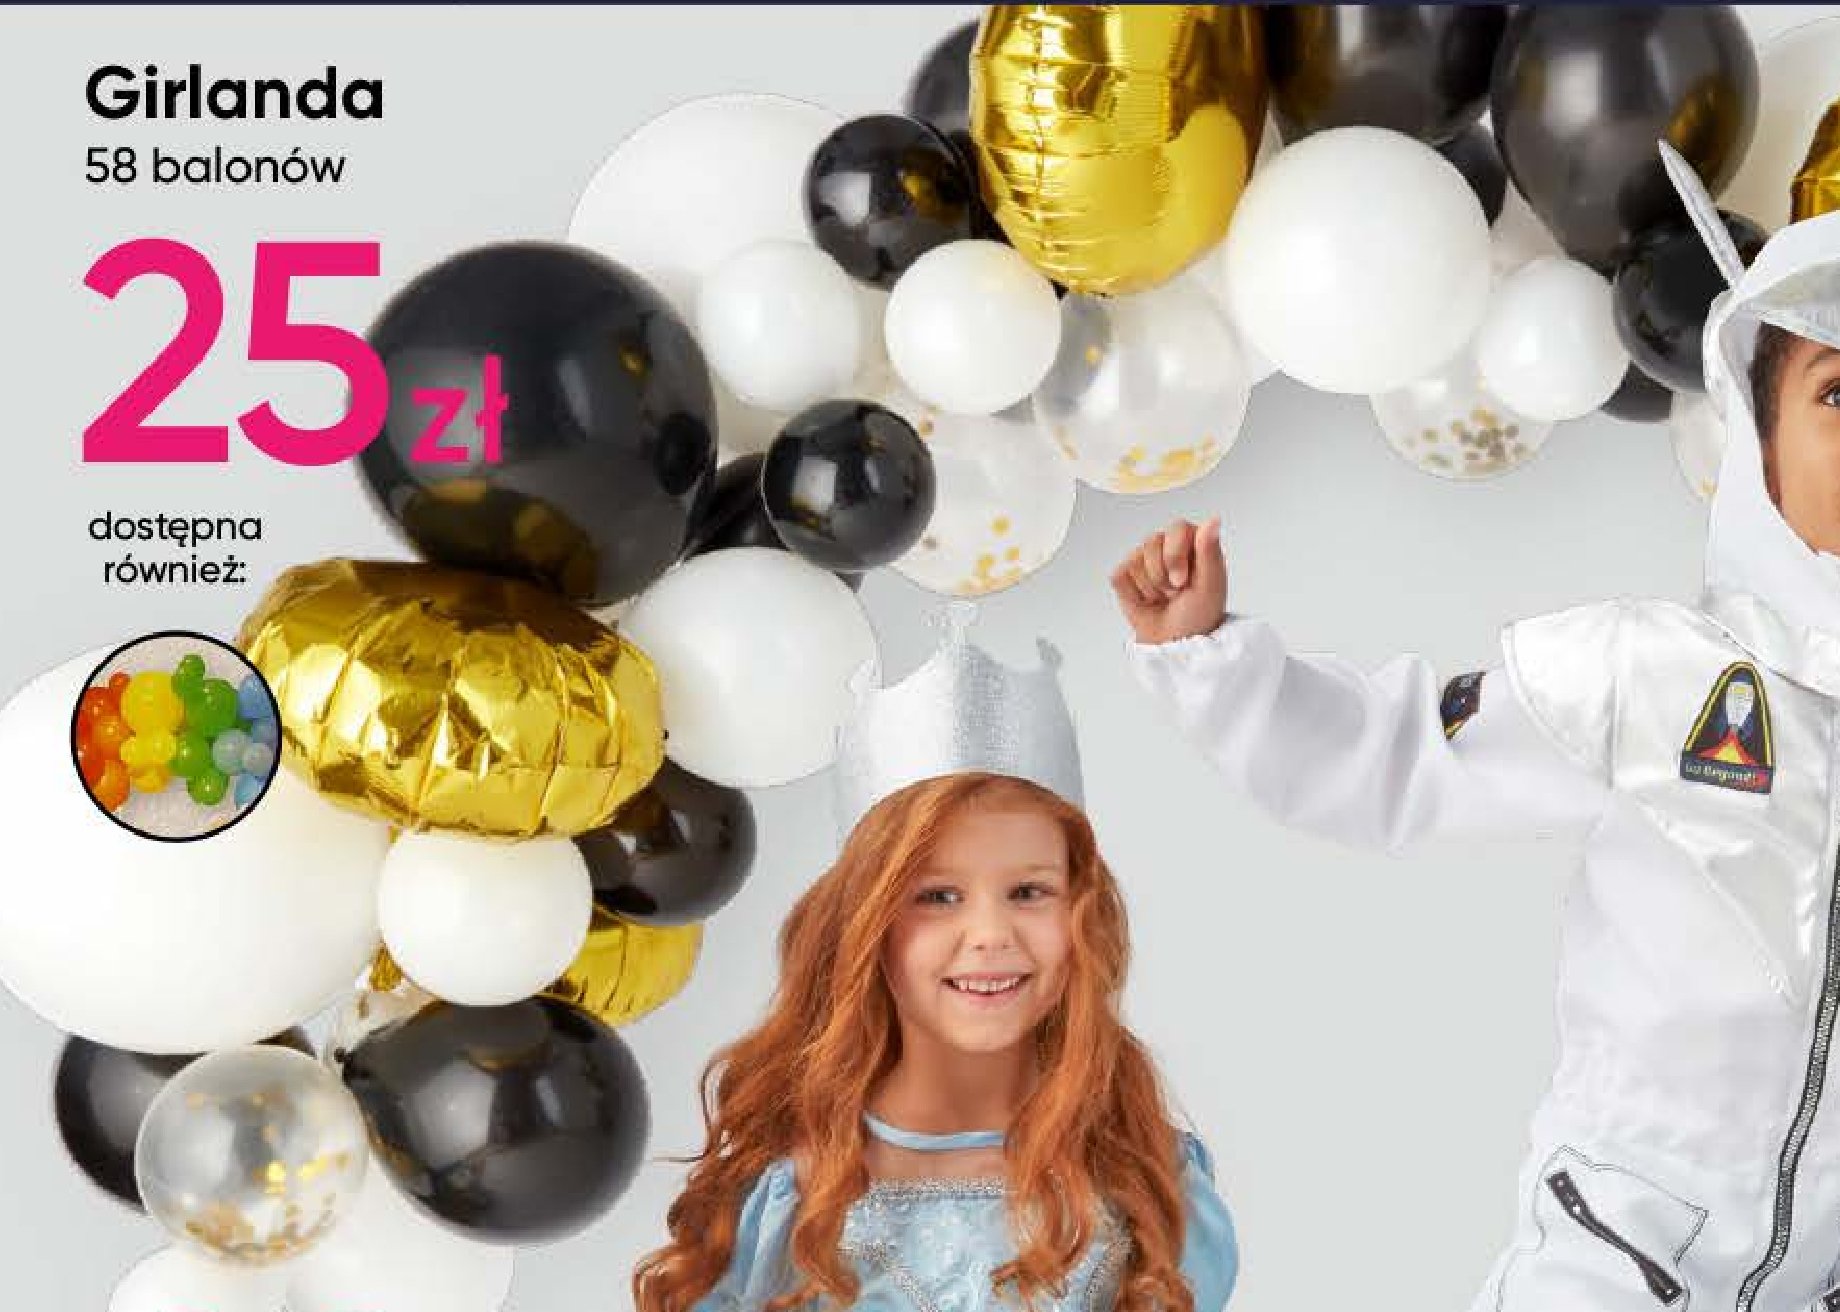 Girlanda 58 balonów promocja